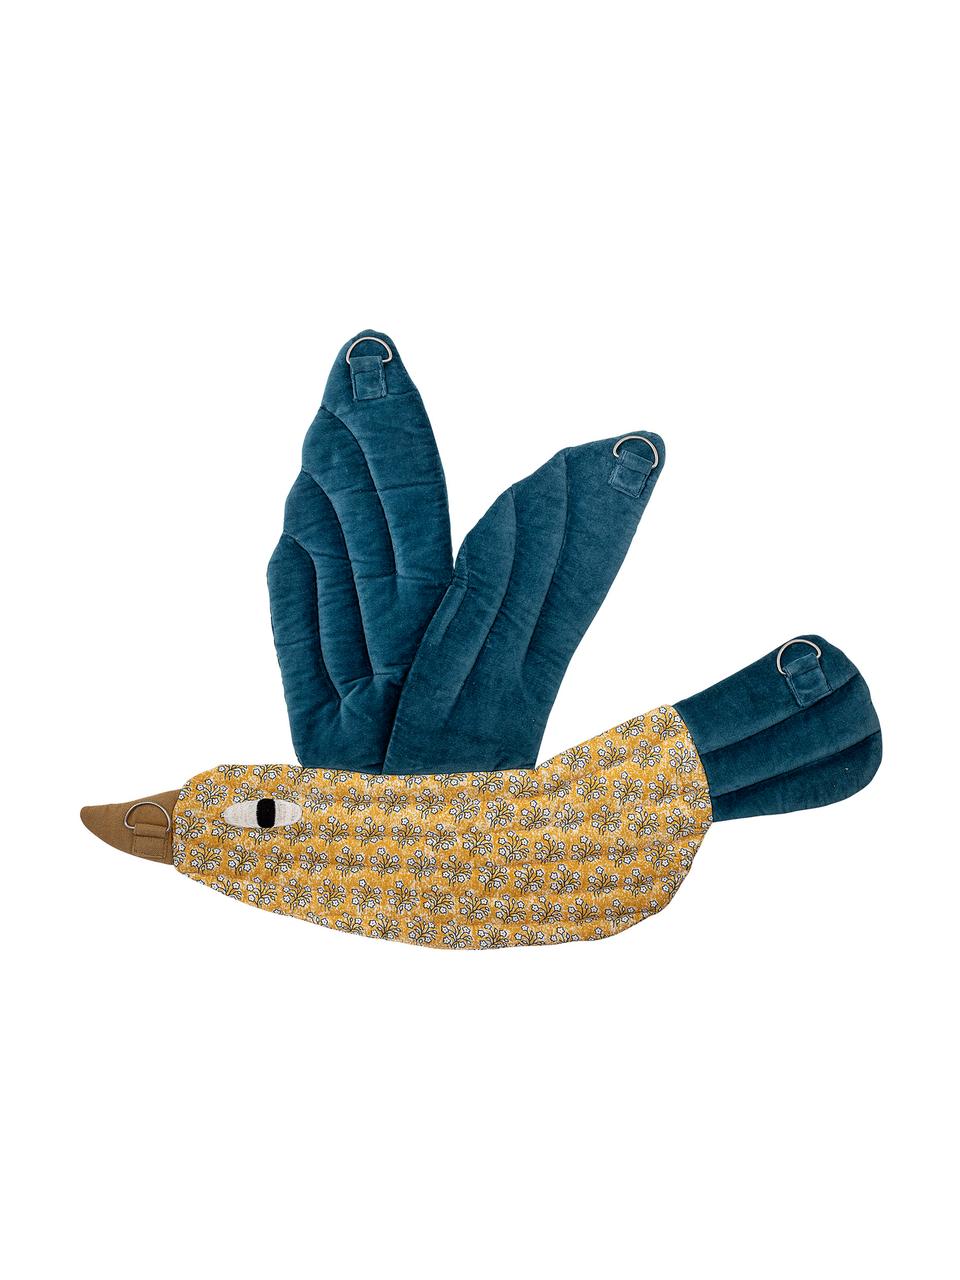 Dekoracja ścienna Blue Bird, Tapicerka: bawełna, Żółty, niebieski, brązowy, biały, S 62 x W 52 cm